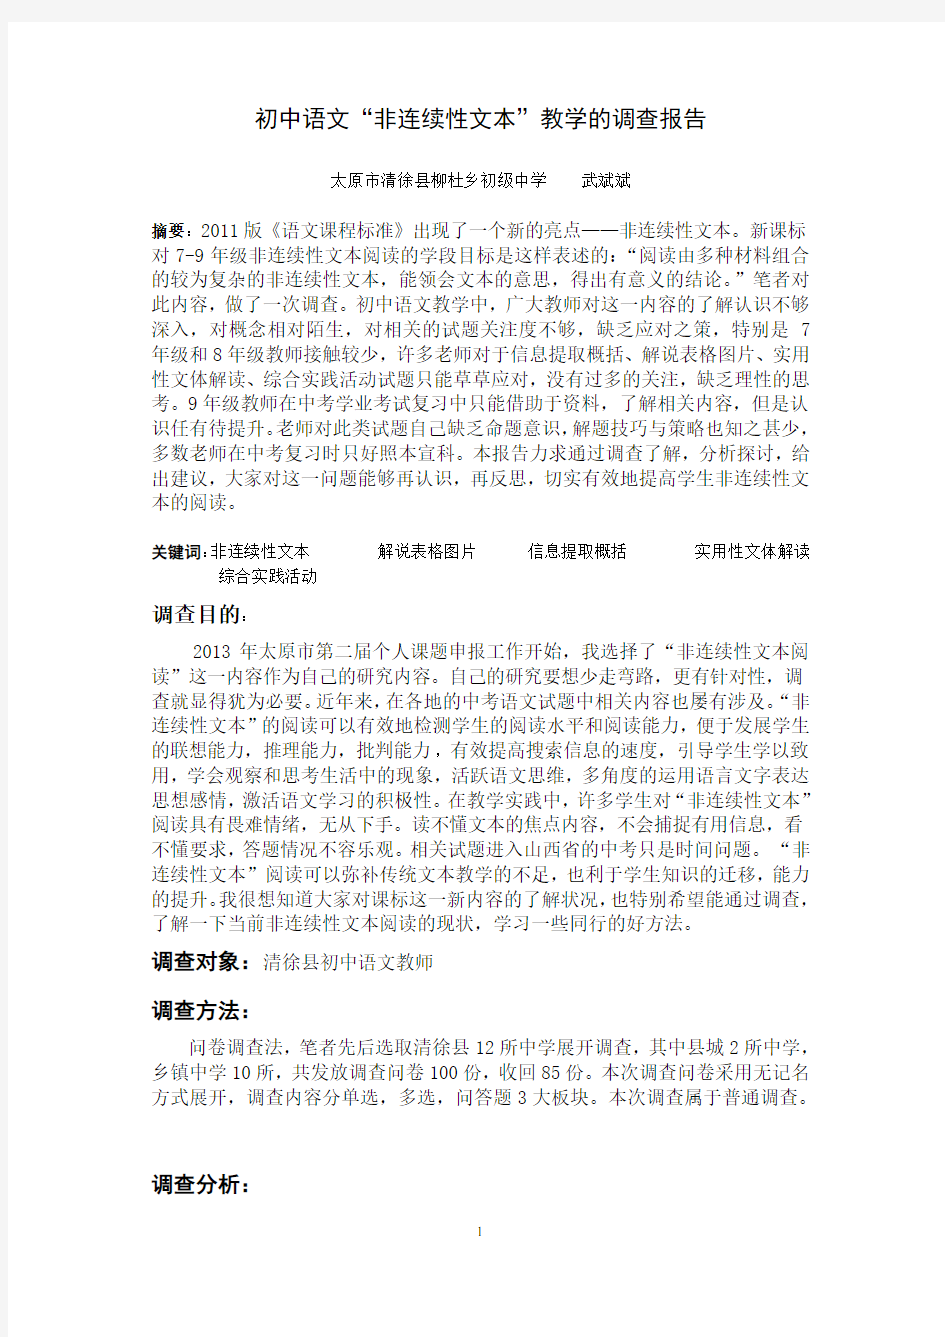 初中语文“非连续性文本”的调查报告